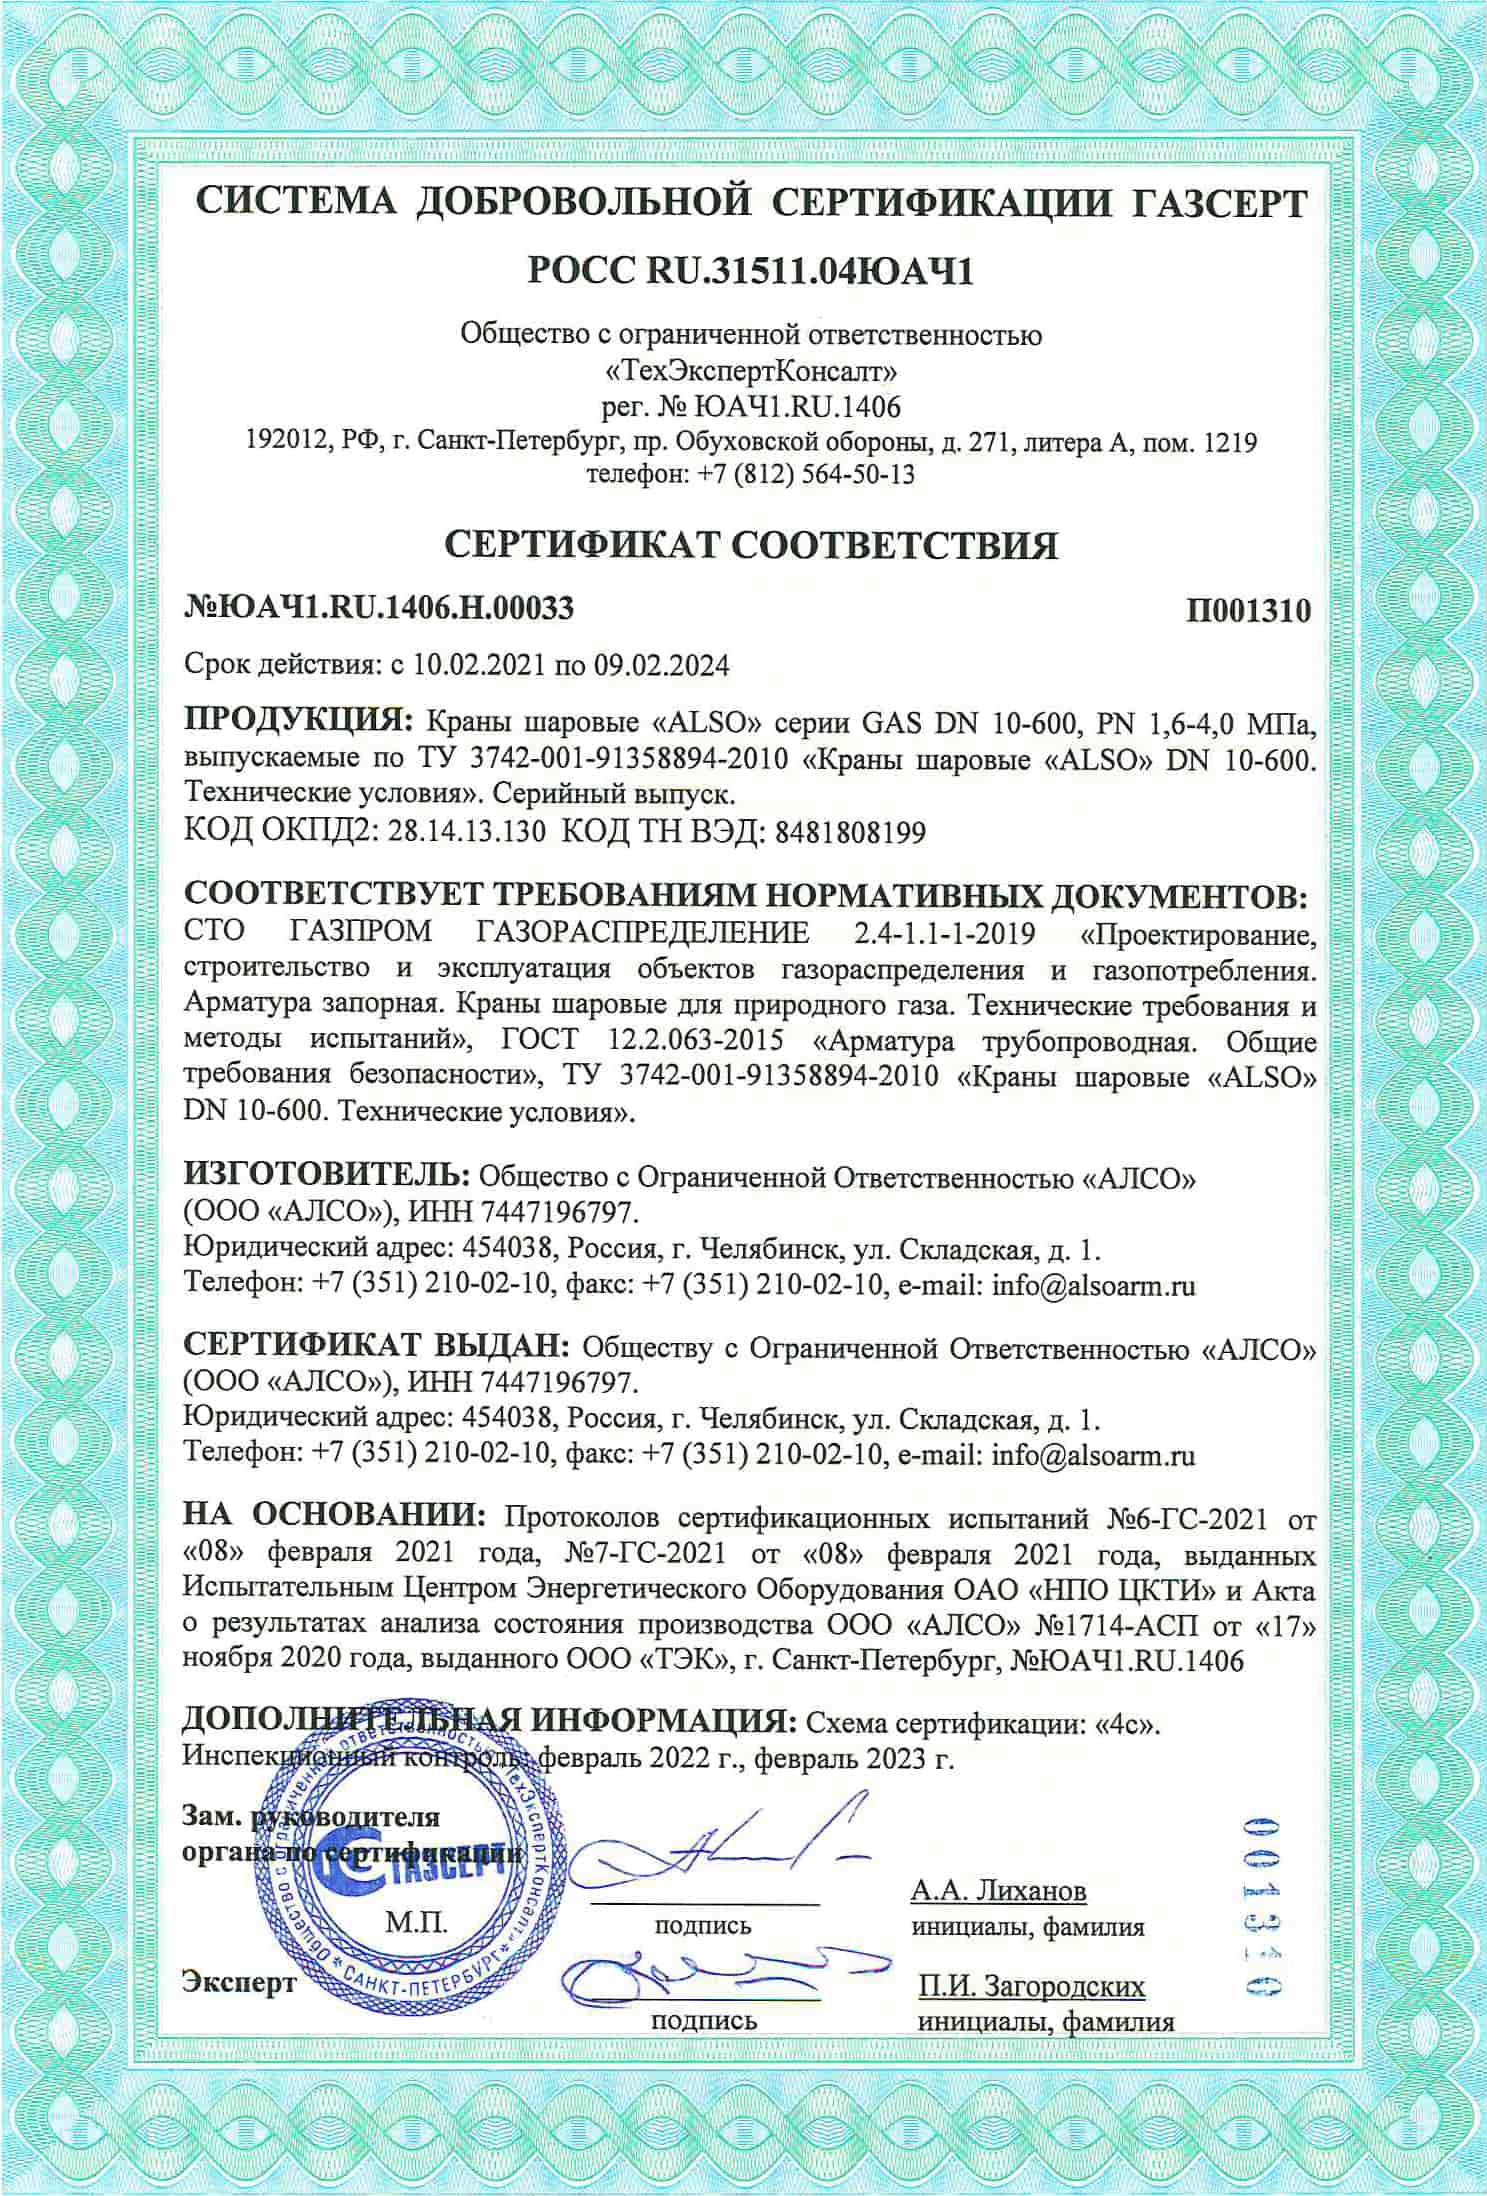 НСПС сертификат